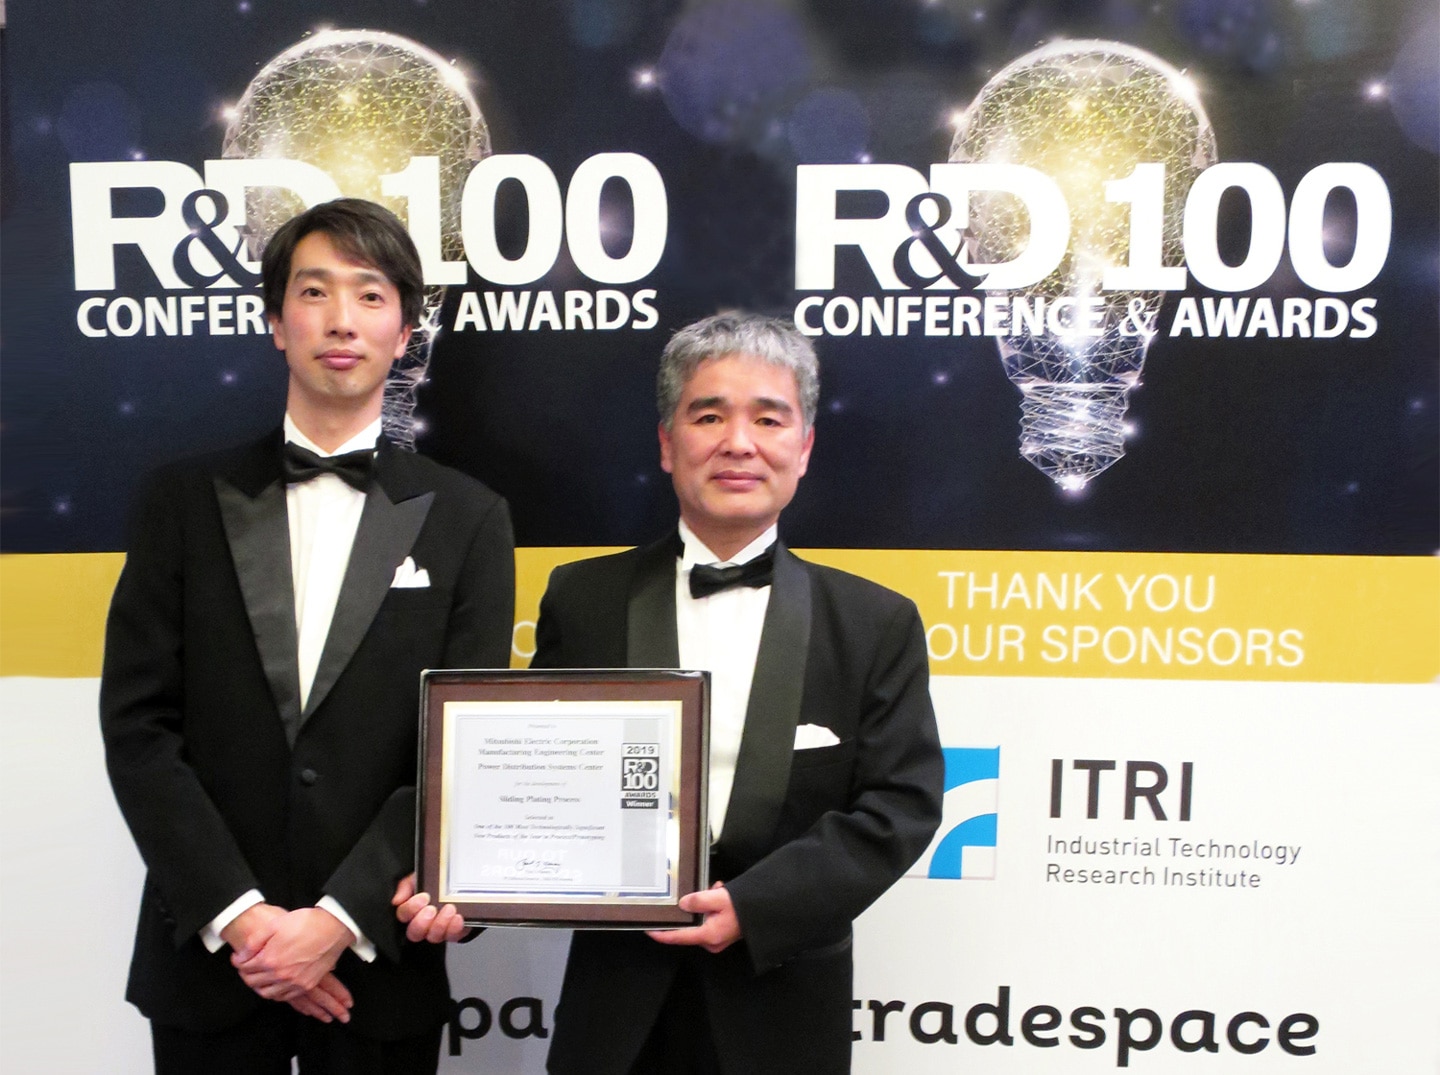 R&D 100 Awards ceremony participants